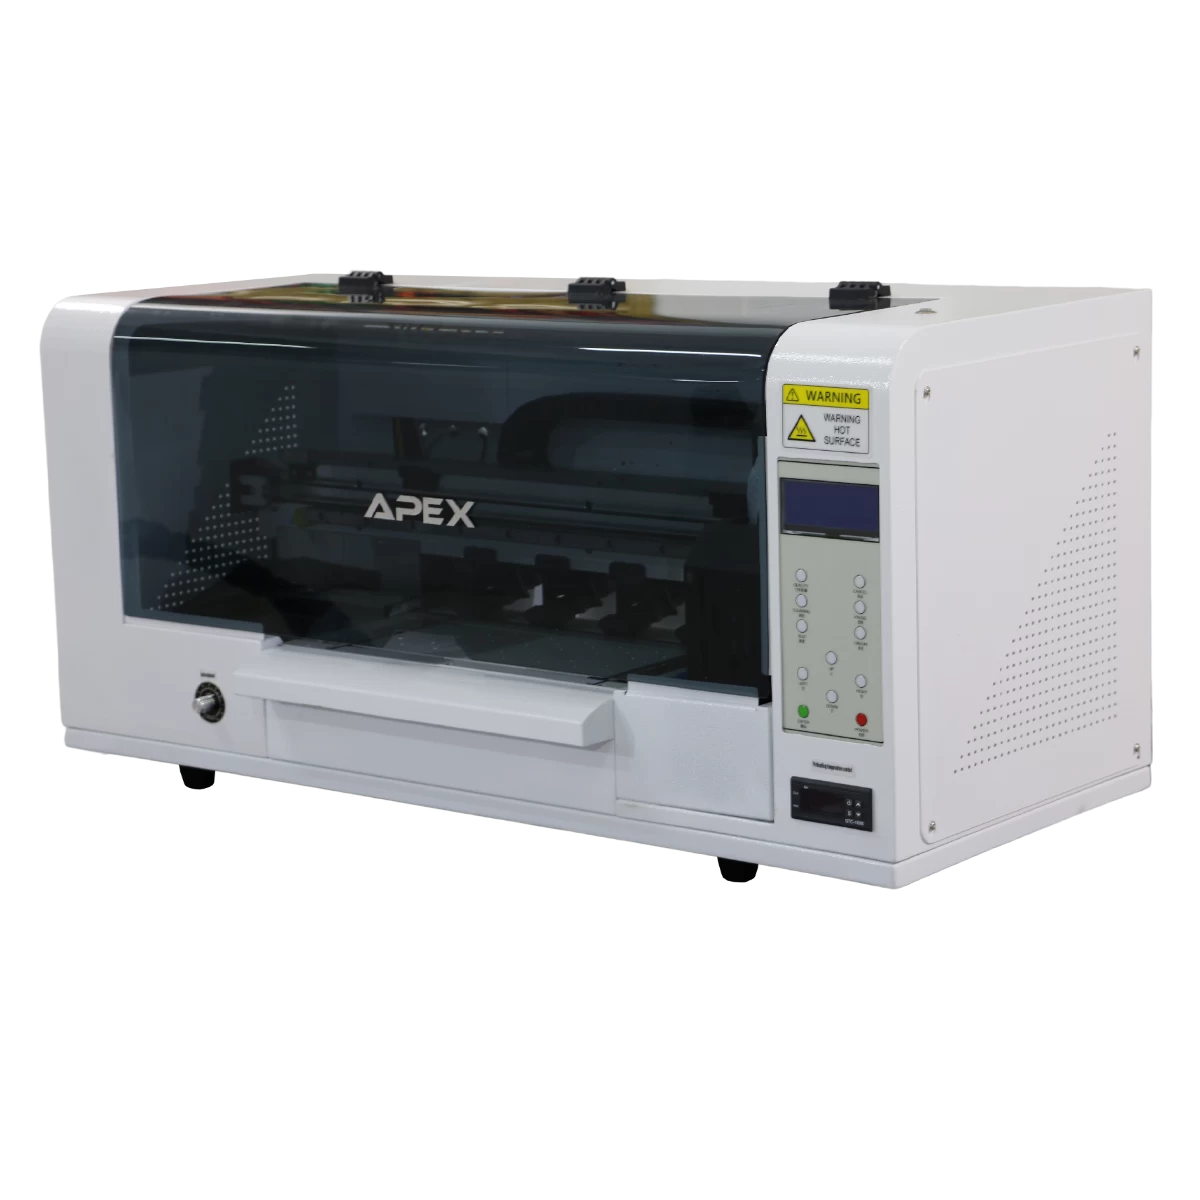 30cm Impresora A3 DTF Epson-I1600 Impresora de sobremesa de doble cabezal